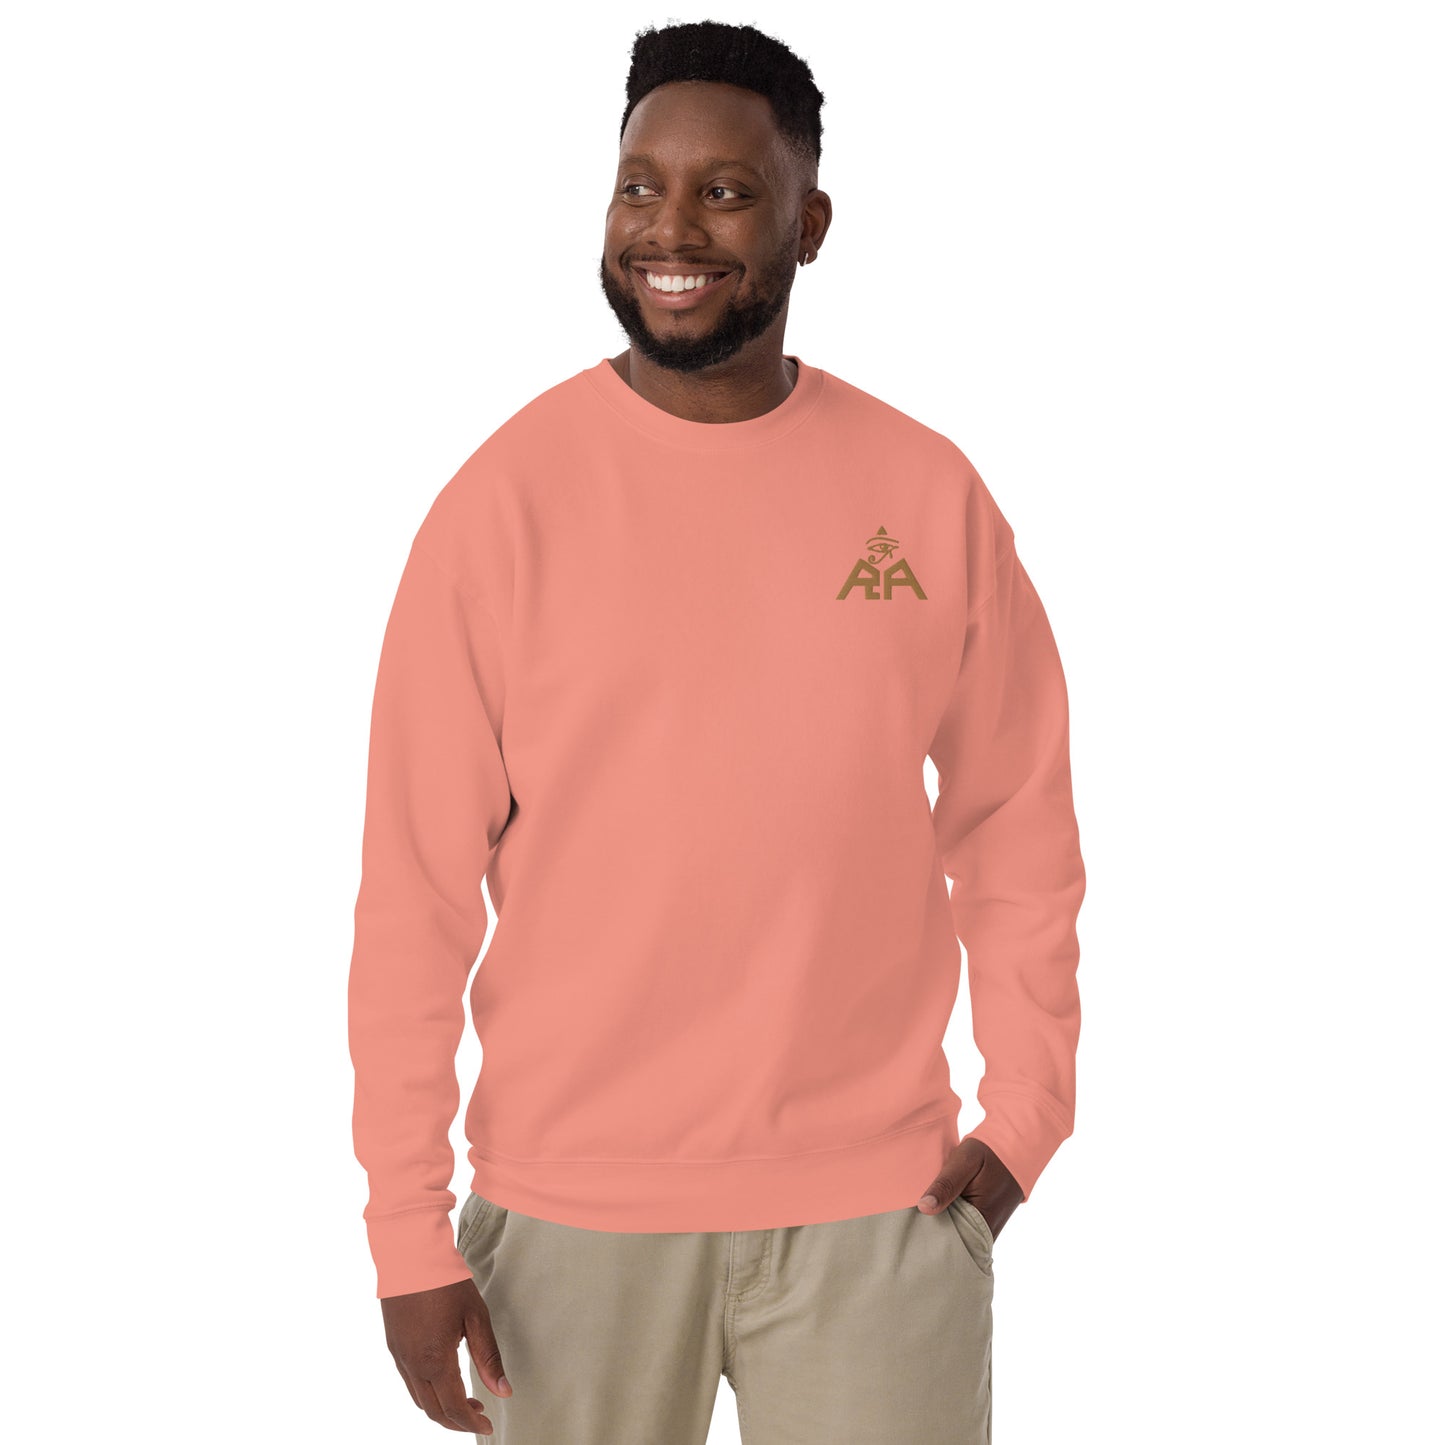 Unisex RA Brand Premium Sweatshirt